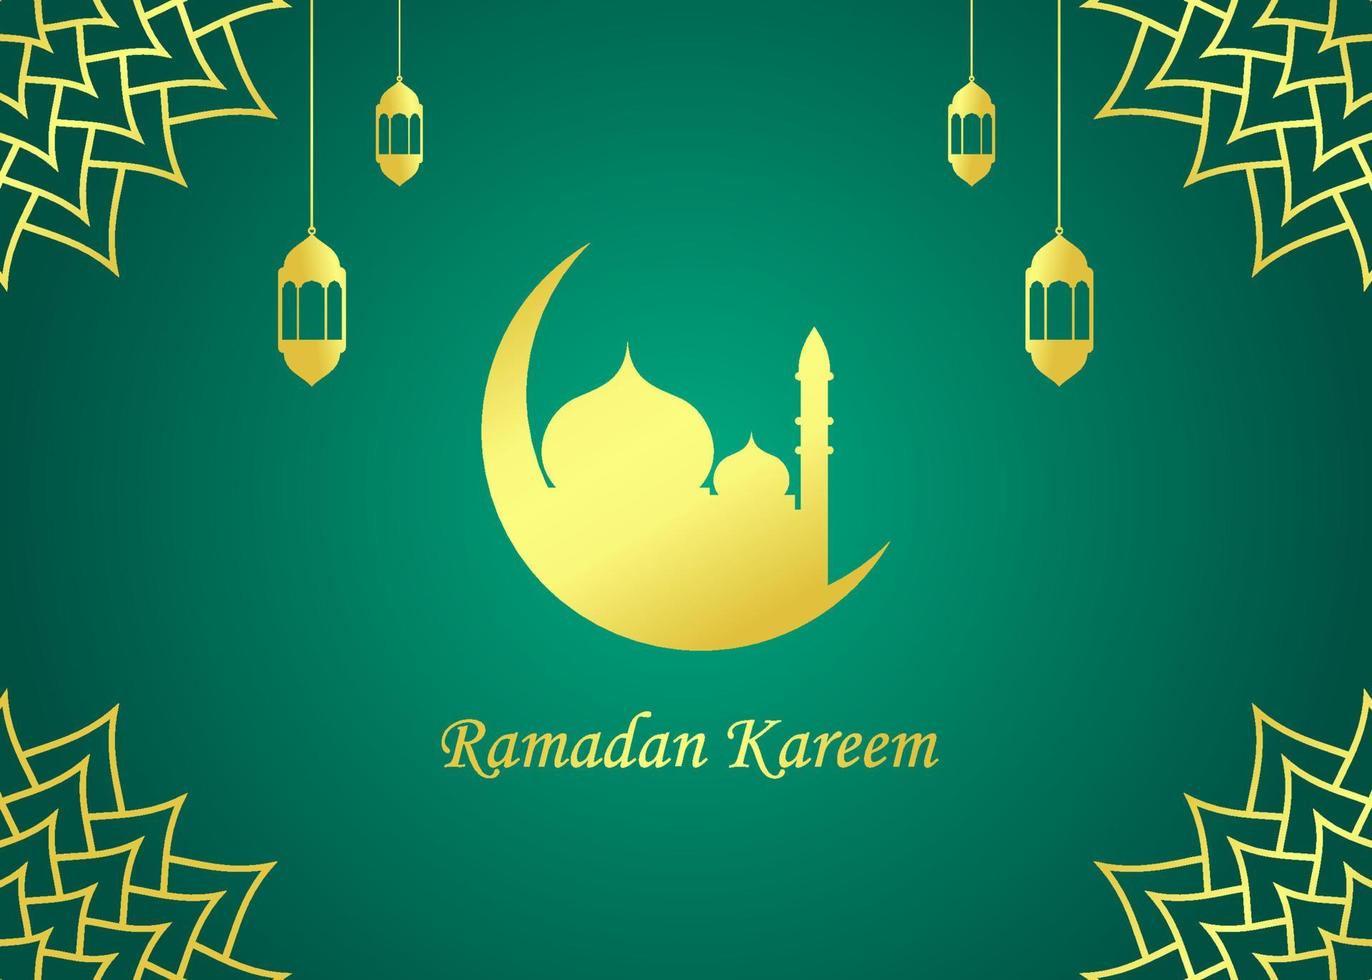 design de plano de fundo de saudação de ramadã kareem com ilustração de mesquita vetor